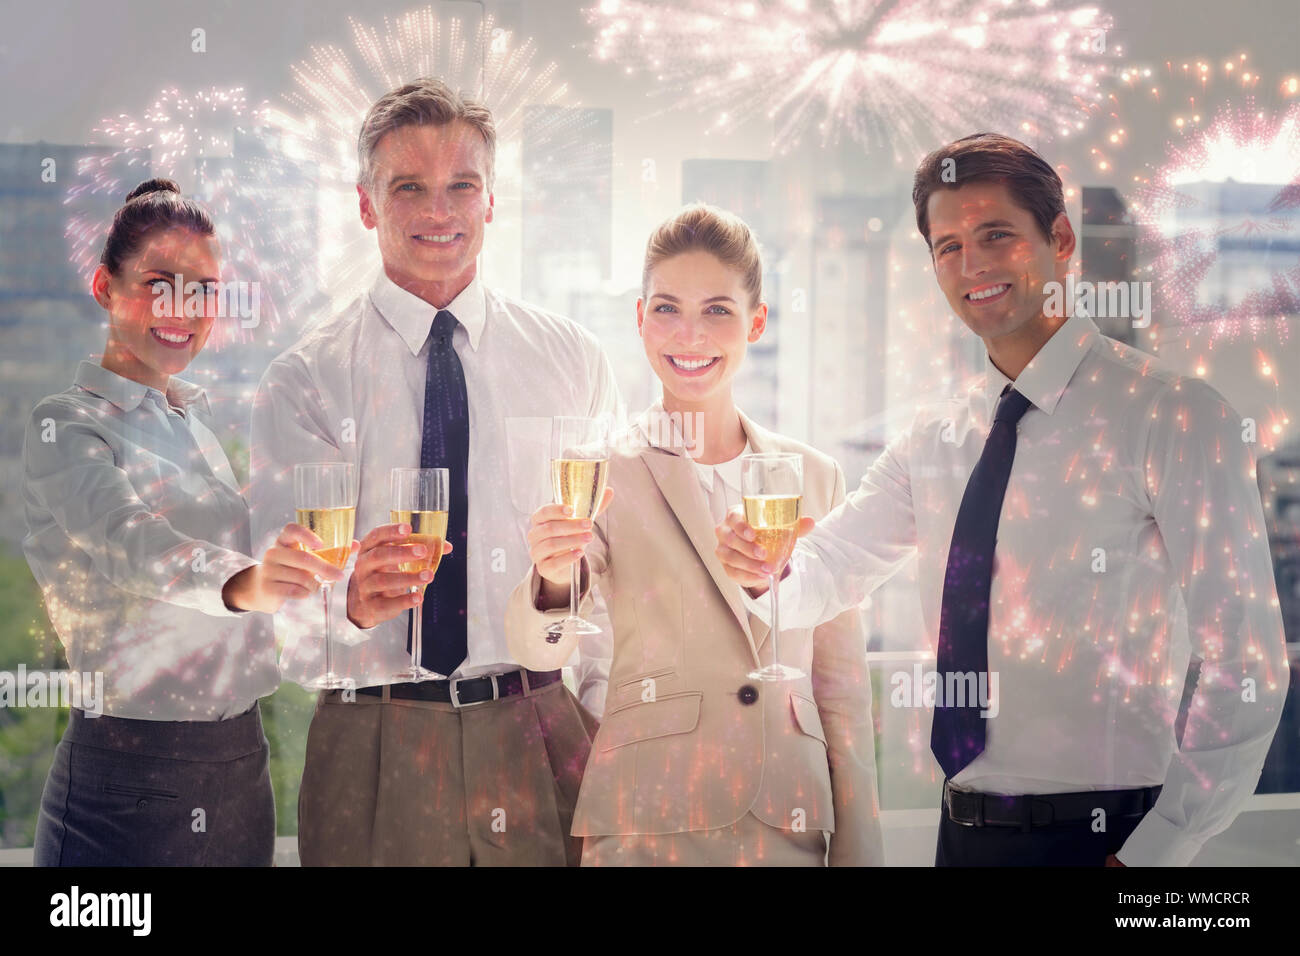 Lächelnd team von Geschäftsleuten zu Ehren ein Erfolg mit Champagner gegen buntes Feuerwerk explodierenden auf schwarzem Hintergrund Stockfoto